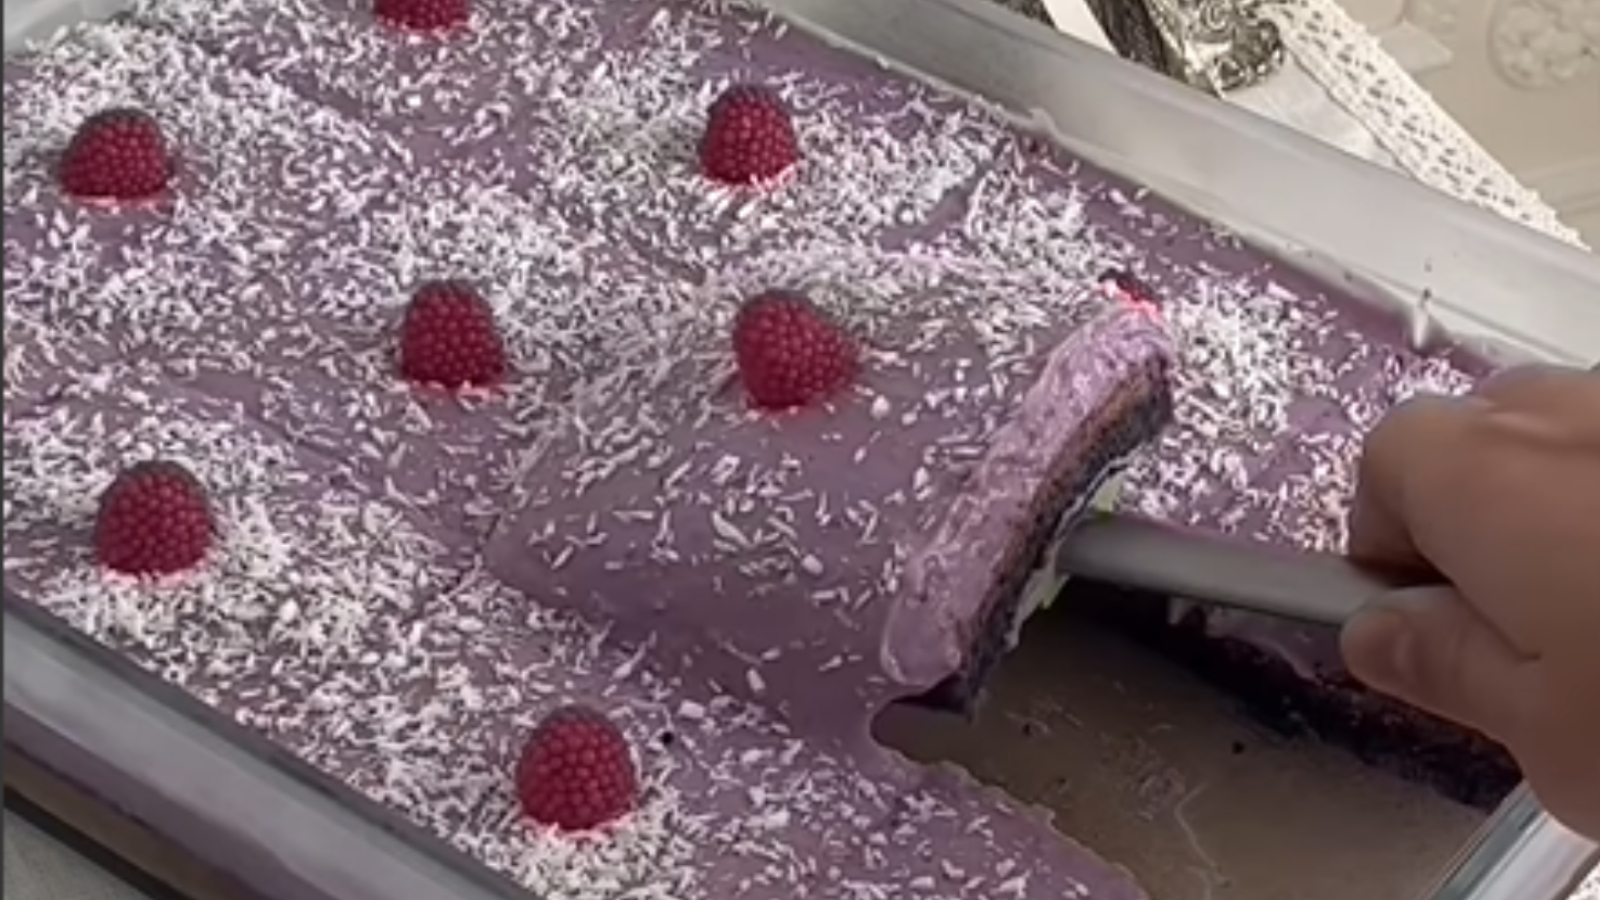 Mor rengine hayranları çok! Siyah havuçlu muhallebili kek tarifi nasıl yapılır?